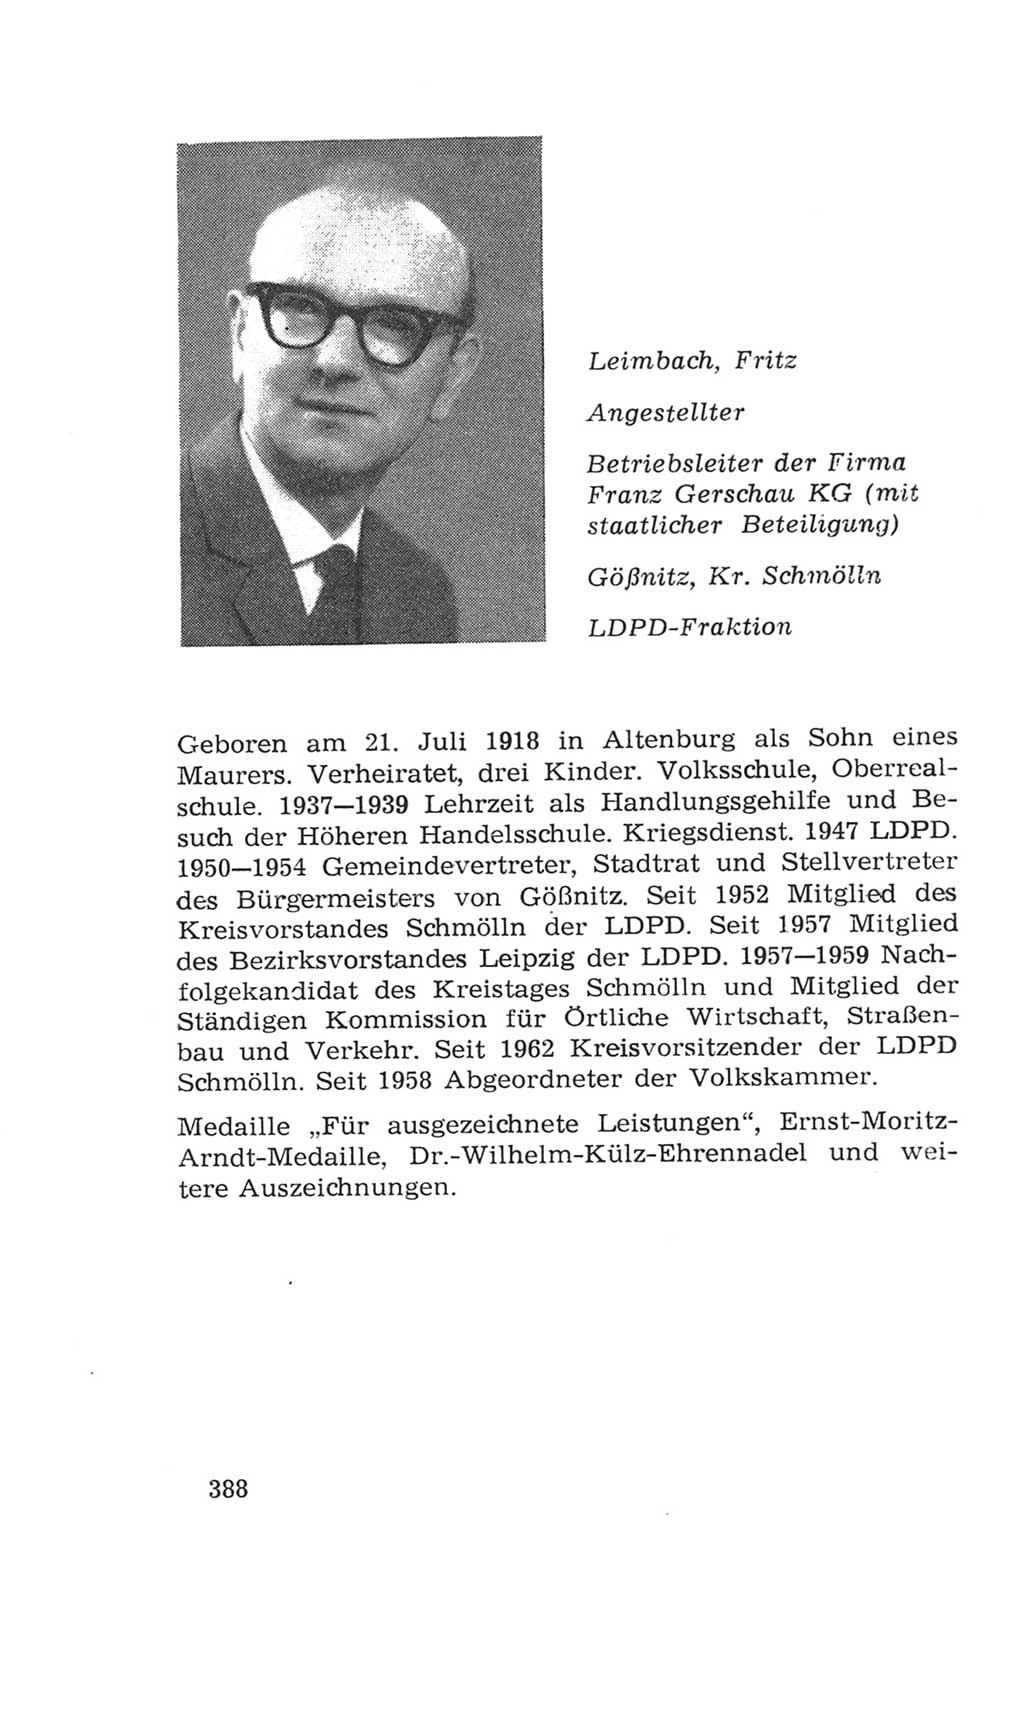 Volkskammer (VK) der Deutschen Demokratischen Republik (DDR), 4. Wahlperiode 1963-1967, Seite 388 (VK. DDR 4. WP. 1963-1967, S. 388)